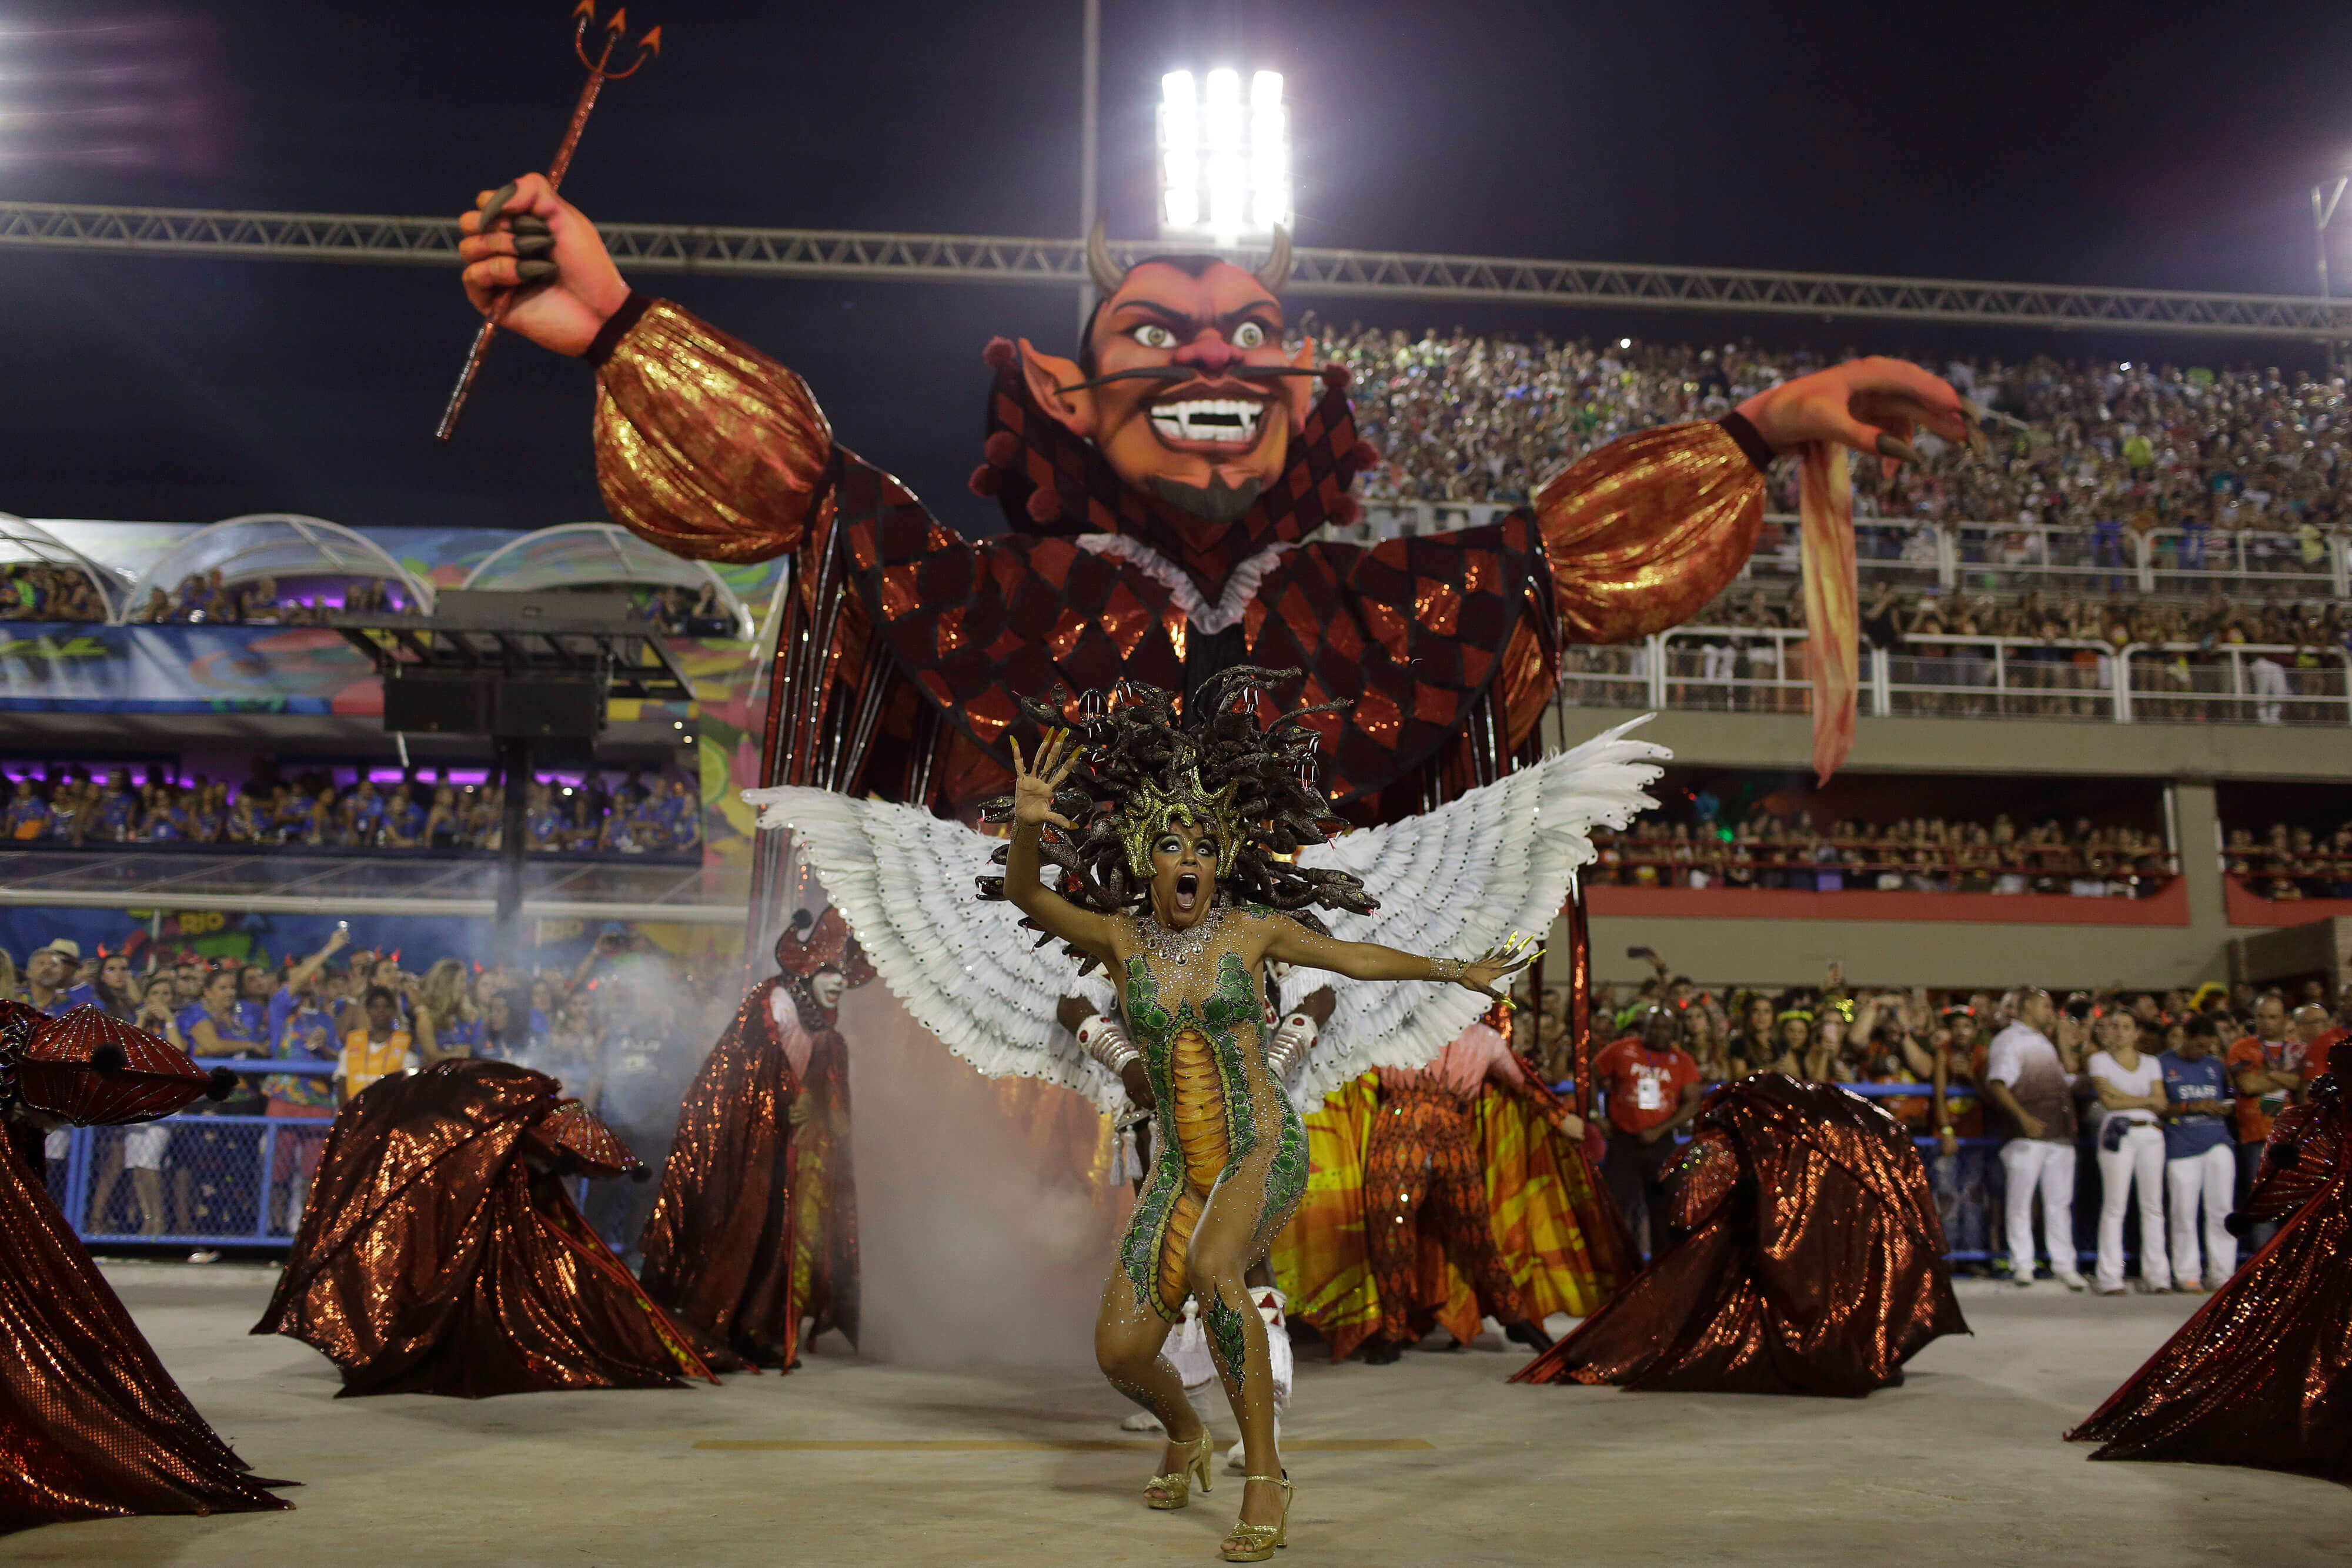 Miles de bailarines repletos de lentejuelas y plumas desfilaron en el Sambódromo de Río de Janeiro. 